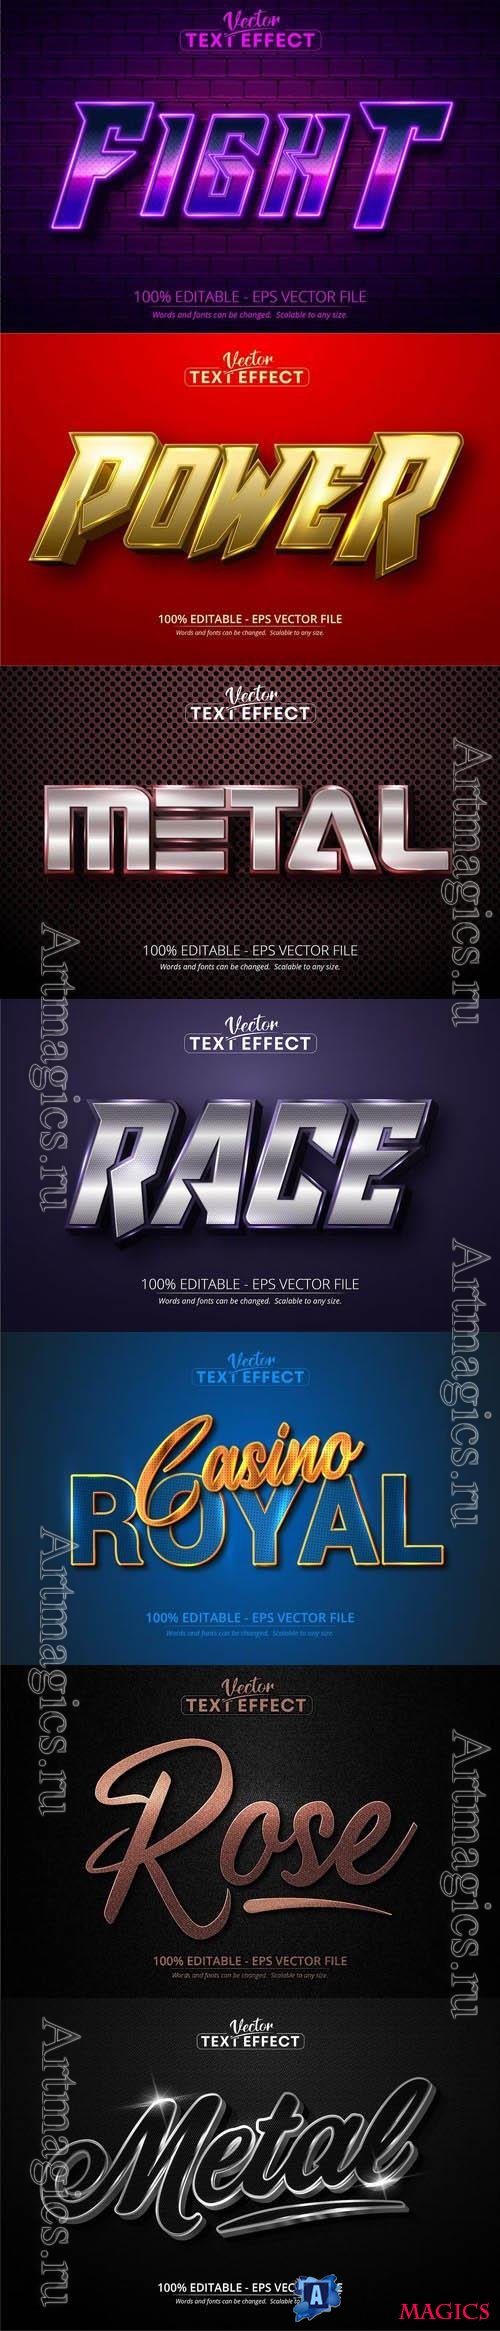 Vector 3d text editable, text effect font vol 124